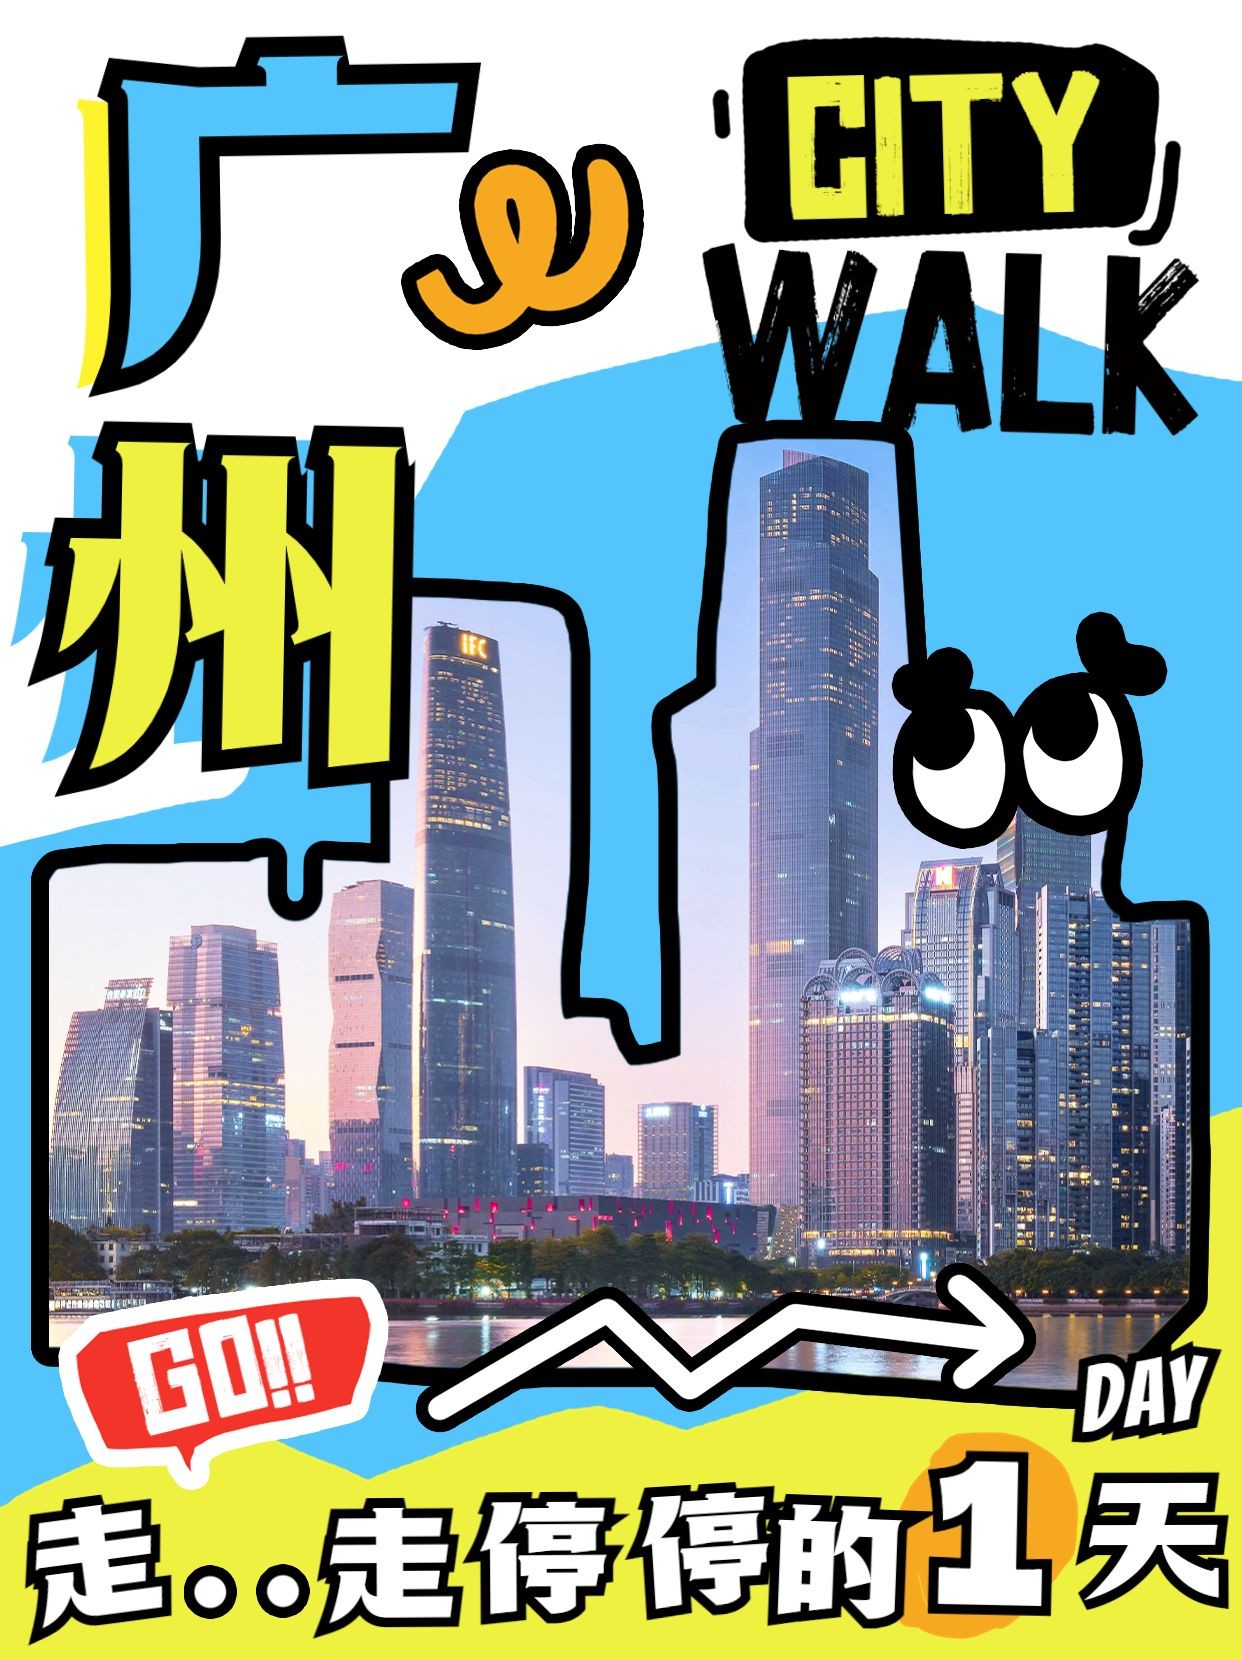 城市city walk旅游攻略系列小红书配图预览效果